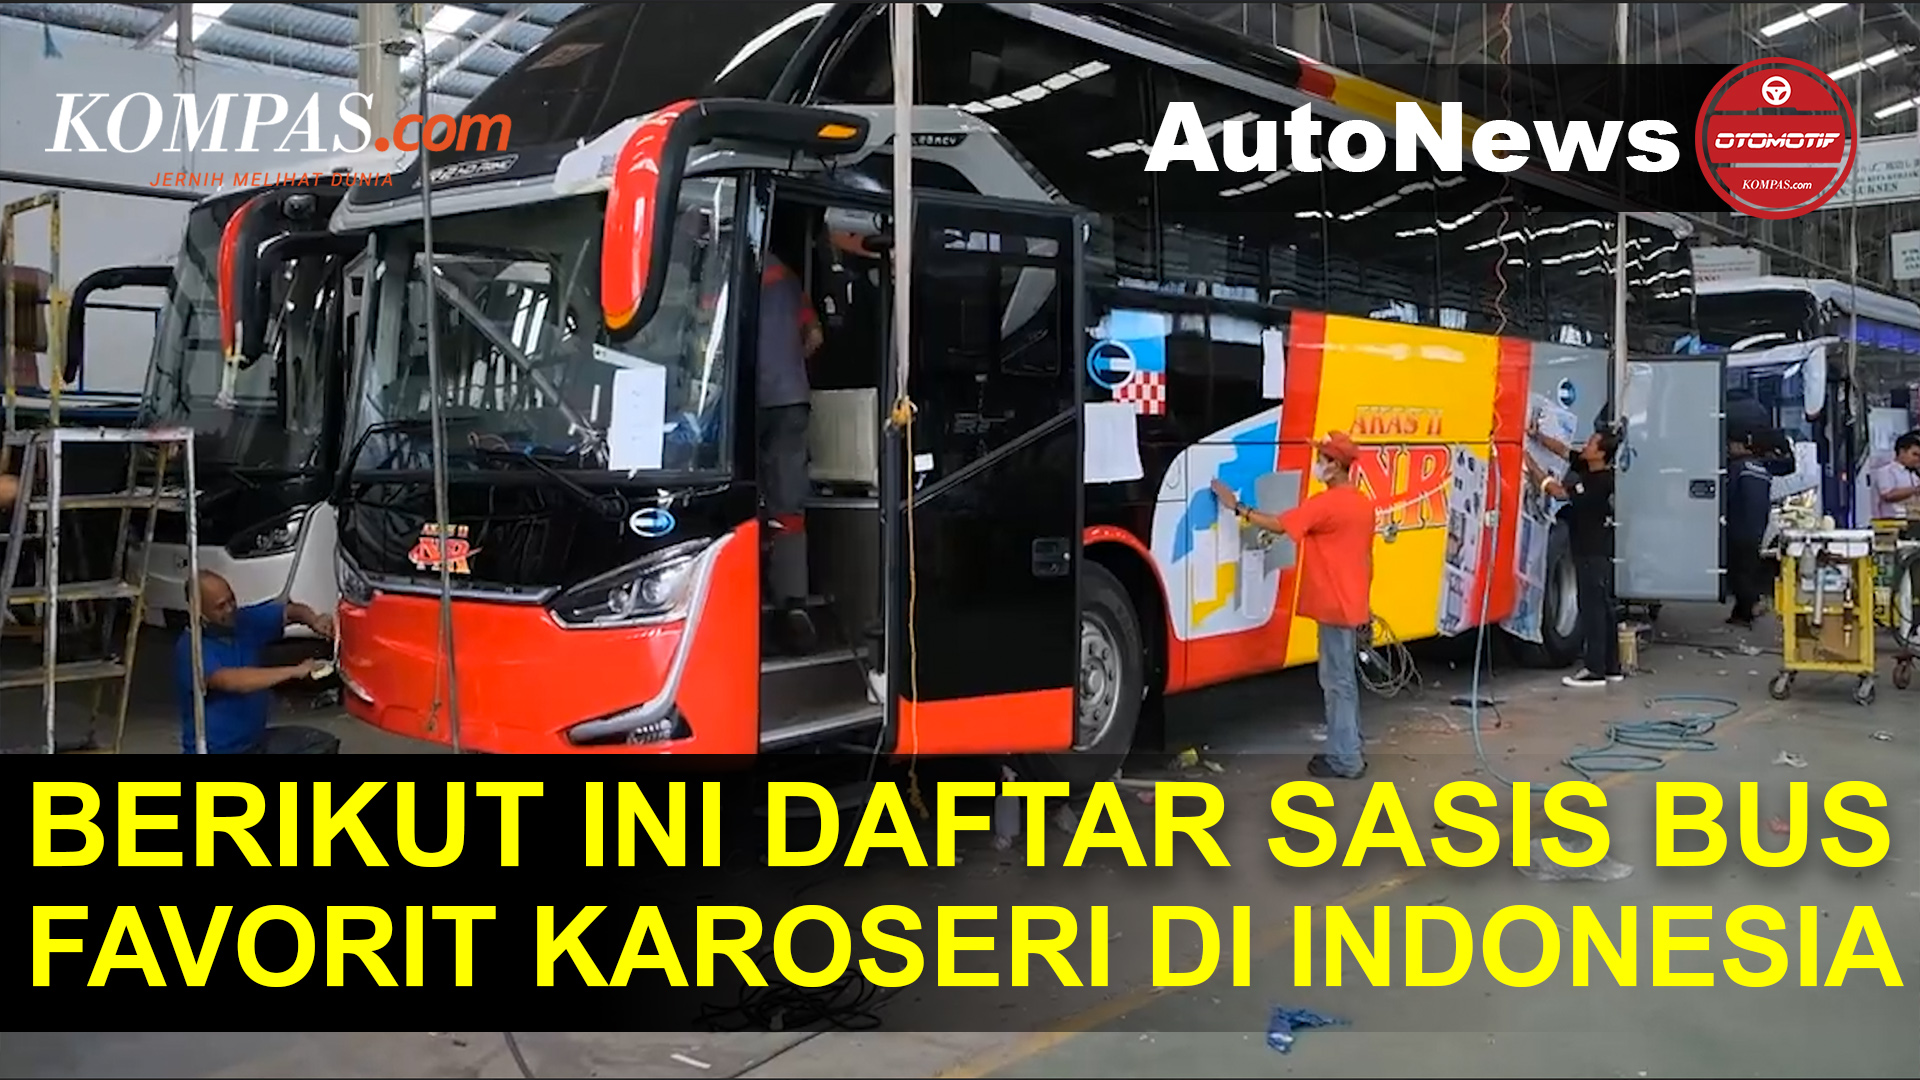 Daftar Sasis Bus Favorit Karoseri di Indonesia